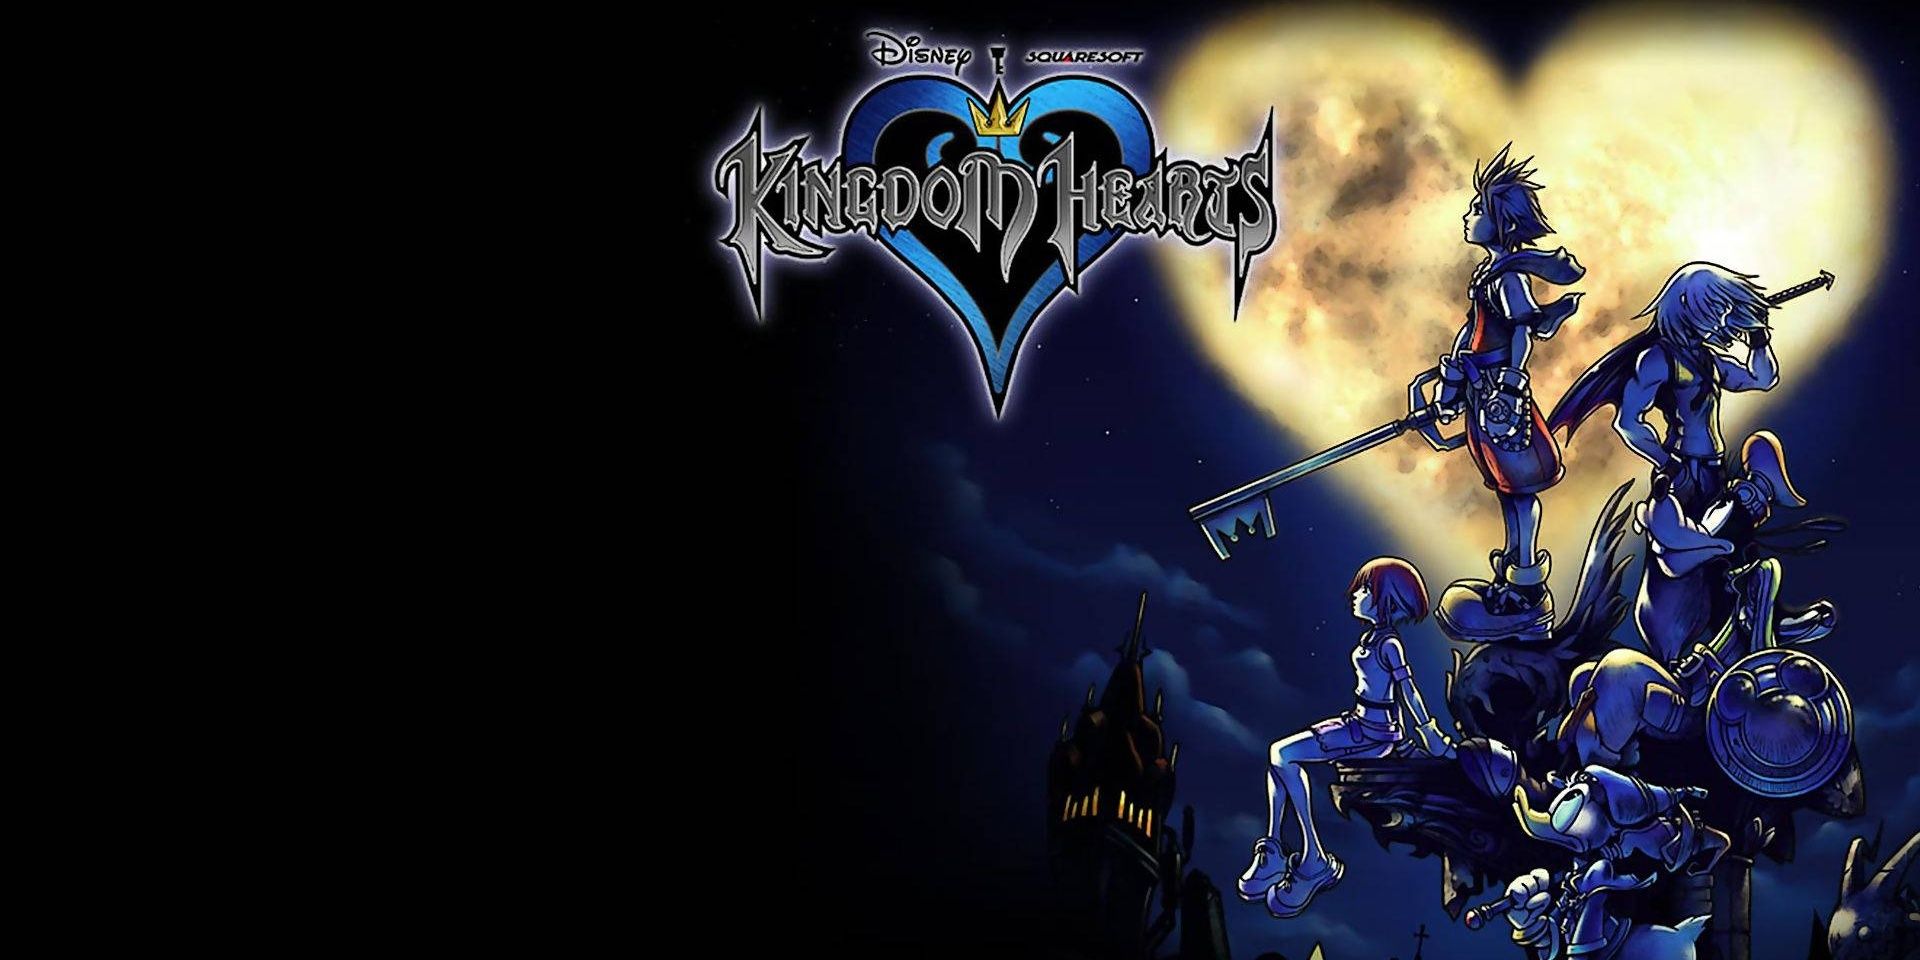 Das Cover von Kingdom Hearts zeigt Sora, Donald, Goofy, Riku und Kairi im Schein des herzförmigen Mondes